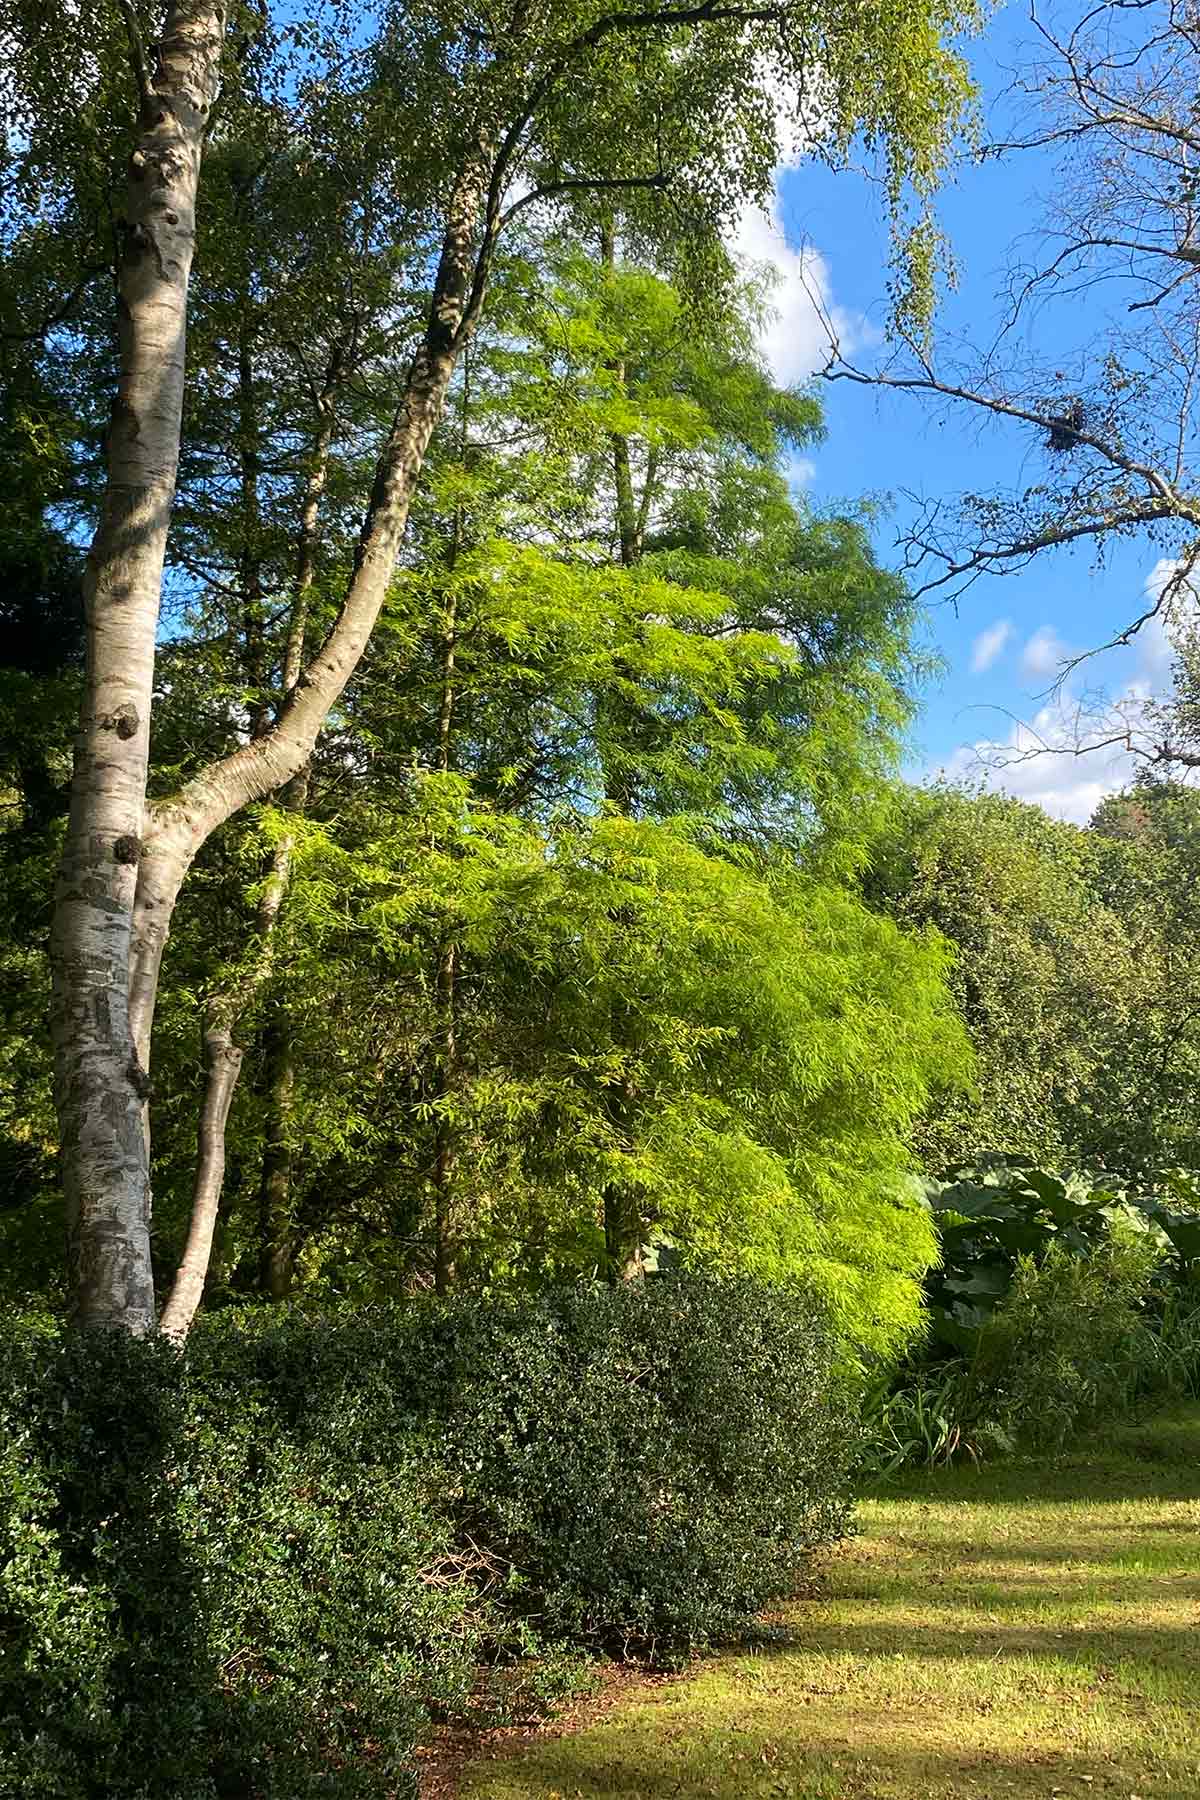 trees in morville's garden